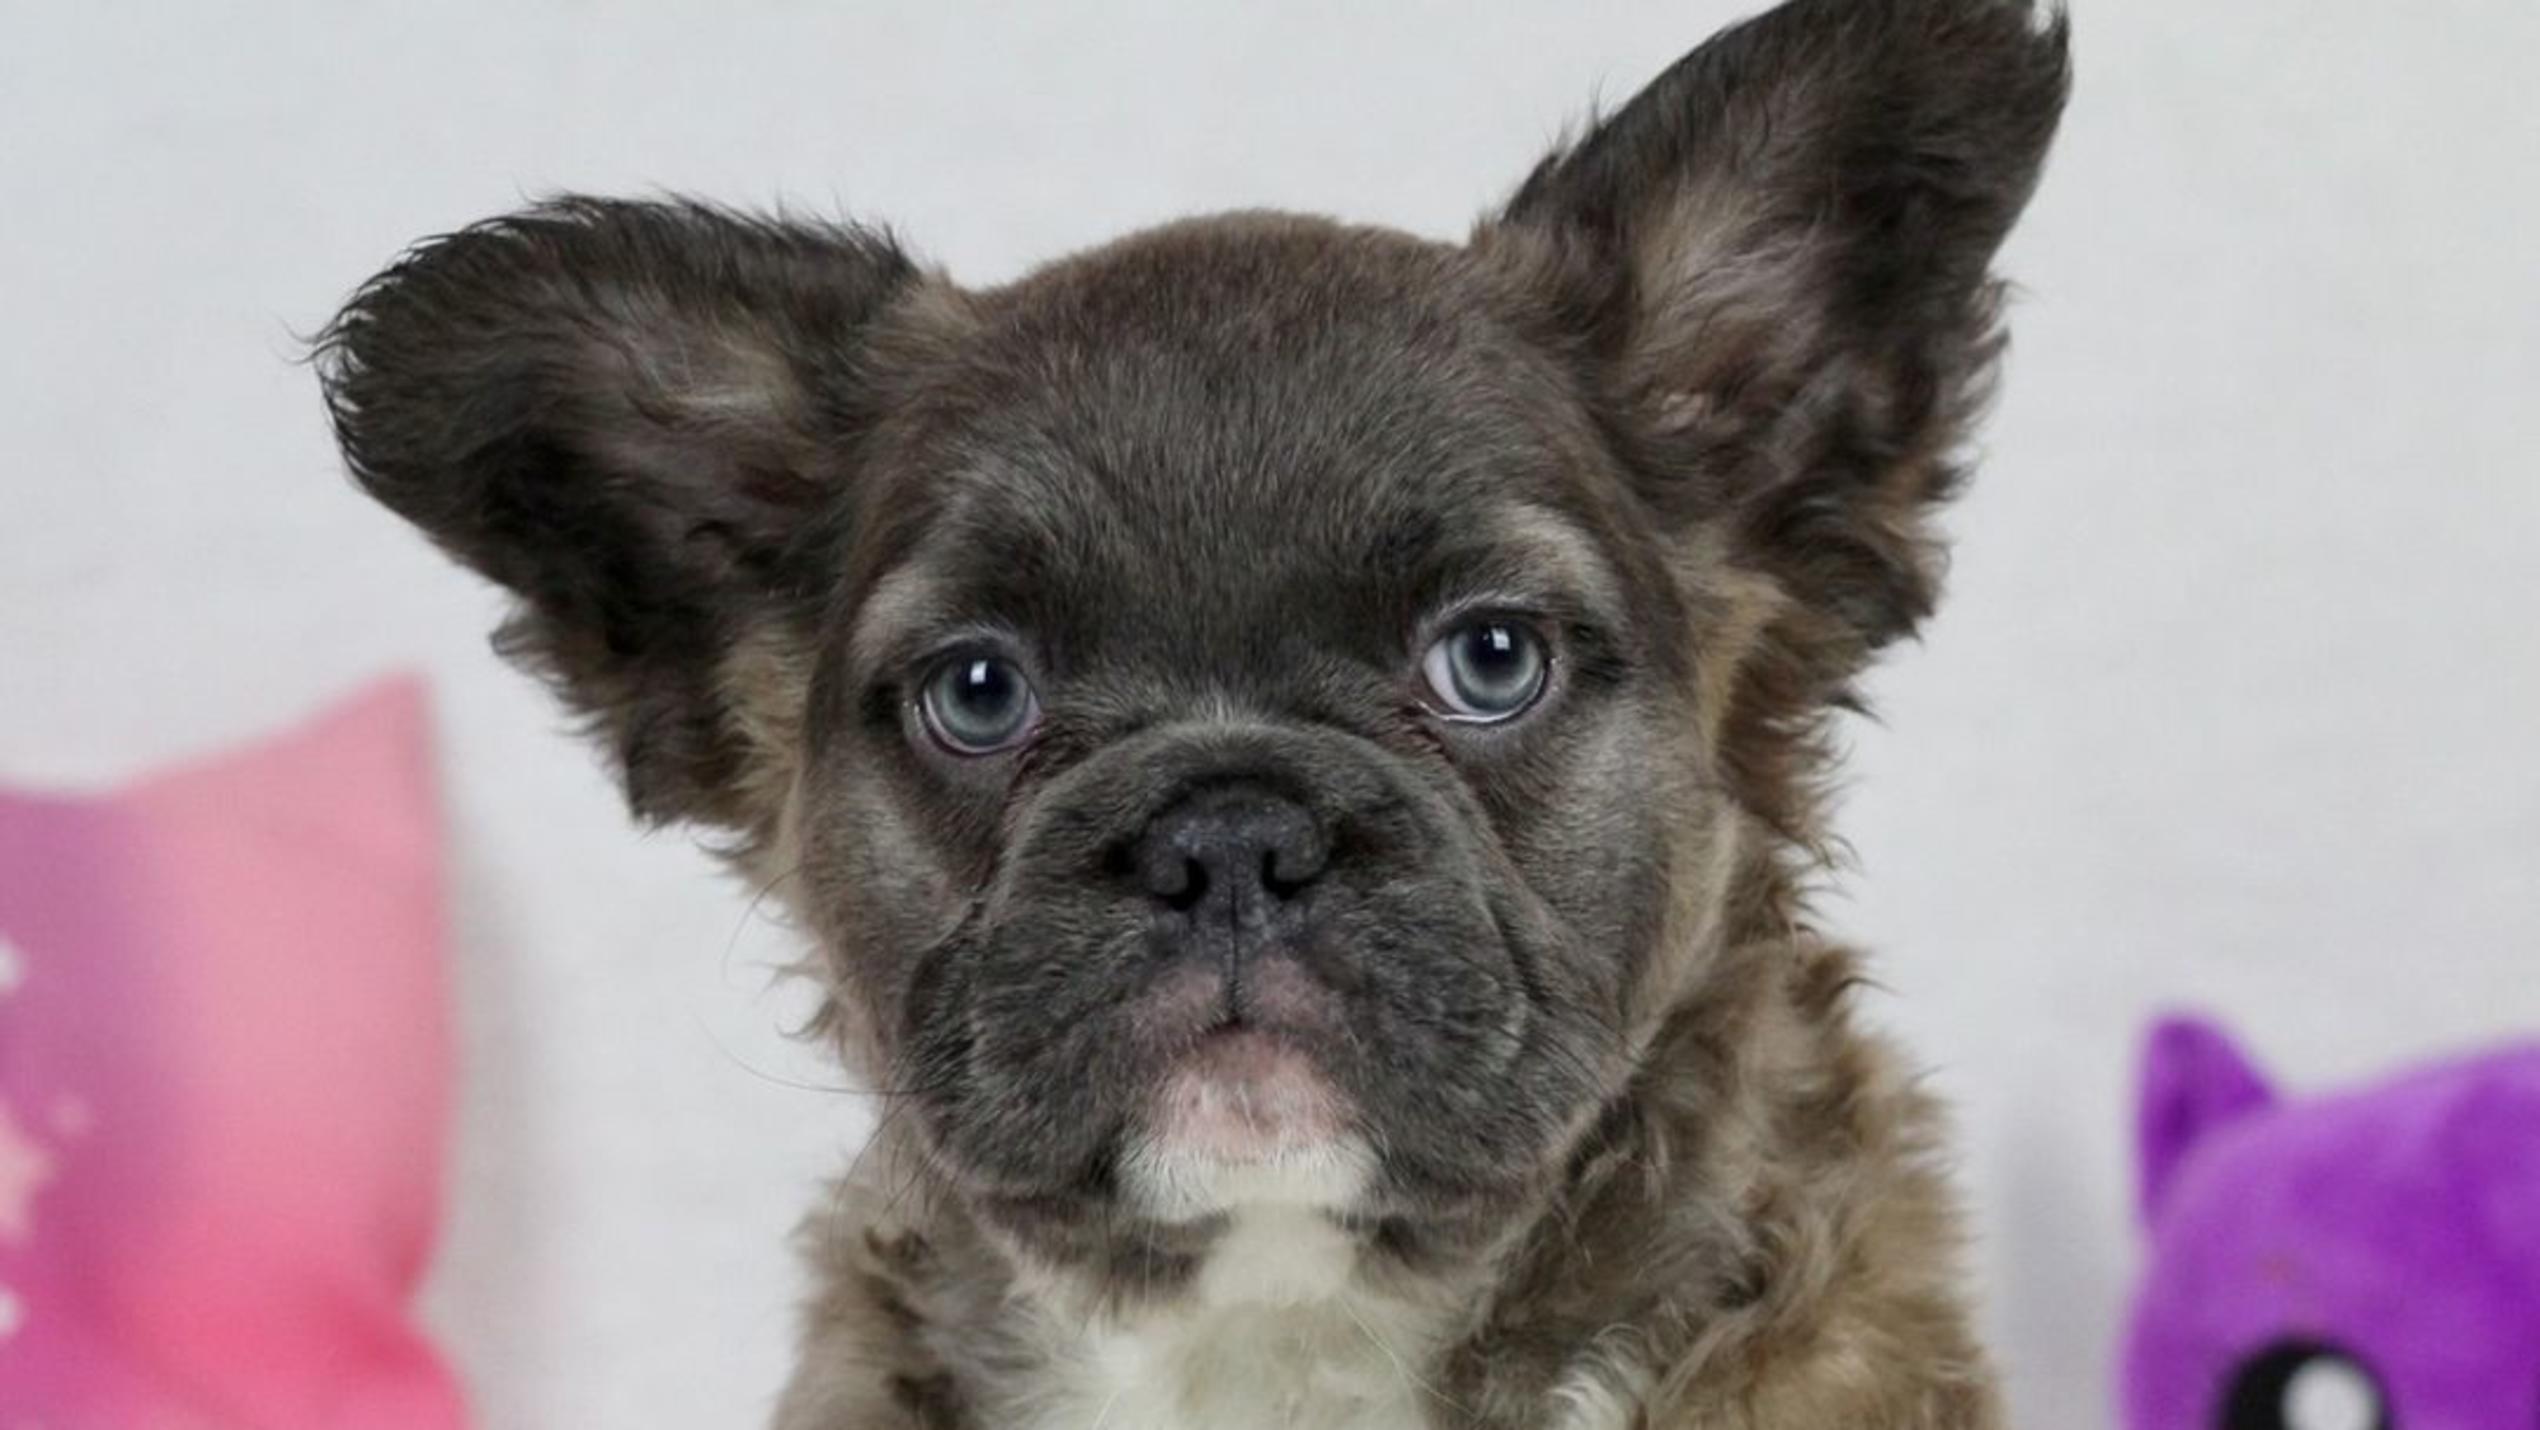 "Fluffy Frenchies" - Französische Bulldoge mit langem Fell guckt süß in die Kamera